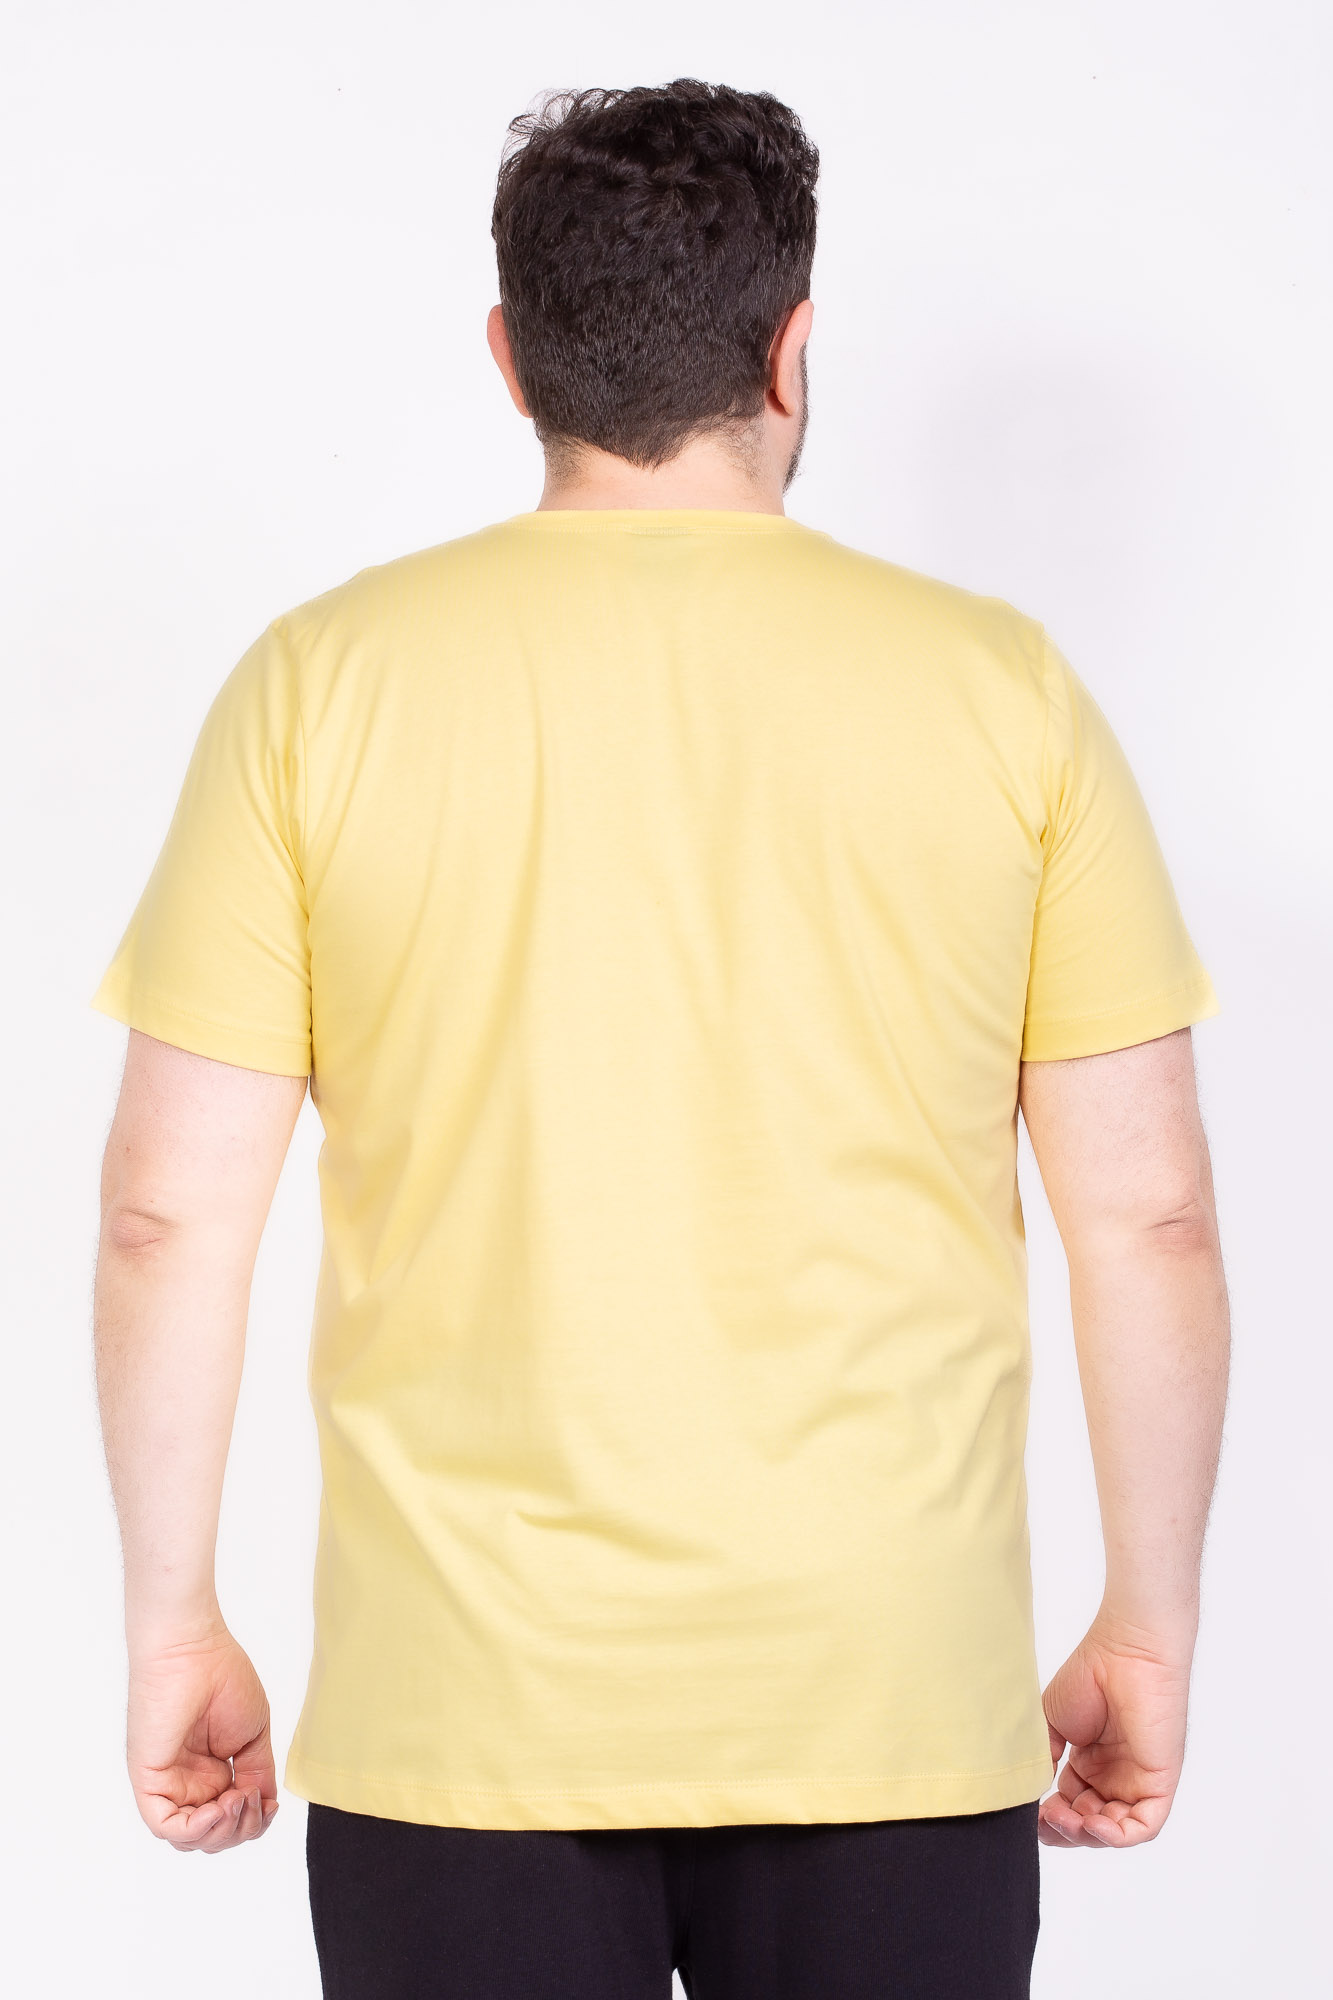 Camiseta Básica 100% algodão amarela Plus size